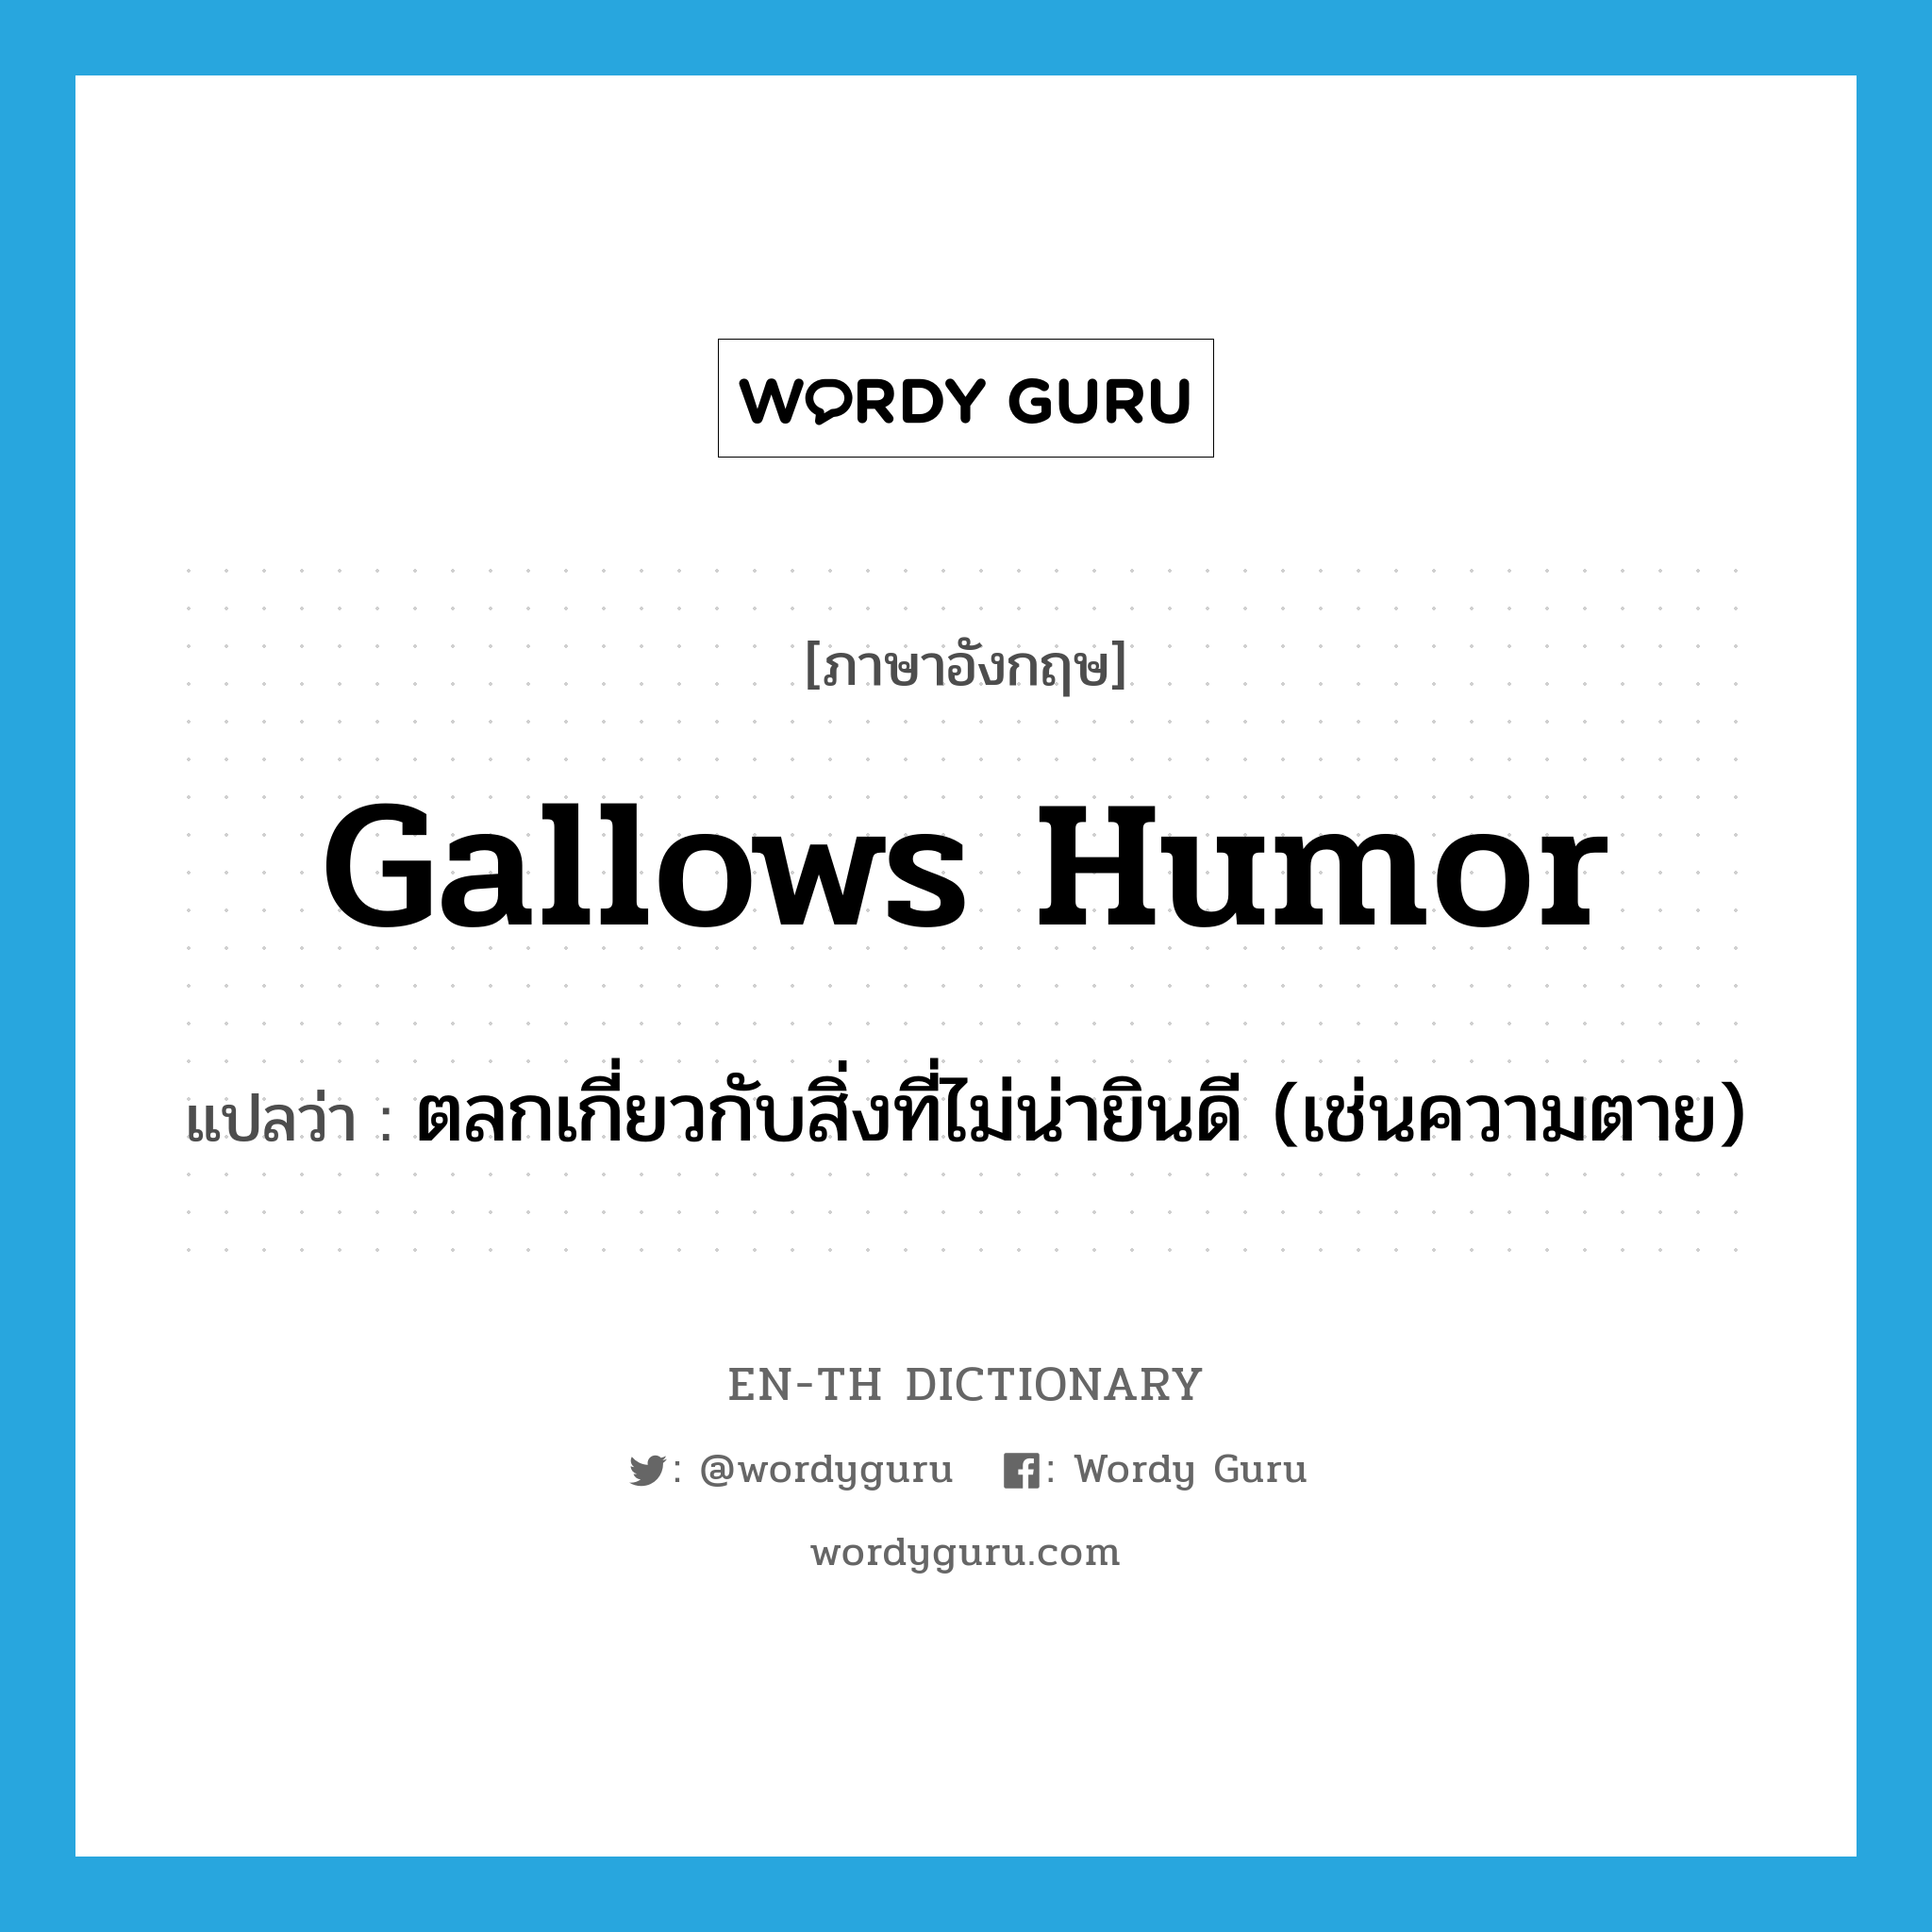 ตลกเกี่ยวกับสิ่งที่ไม่น่ายินดี (เช่นความตาย) ภาษาอังกฤษ?, คำศัพท์ภาษาอังกฤษ ตลกเกี่ยวกับสิ่งที่ไม่น่ายินดี (เช่นความตาย) แปลว่า gallows humor ประเภท N หมวด N